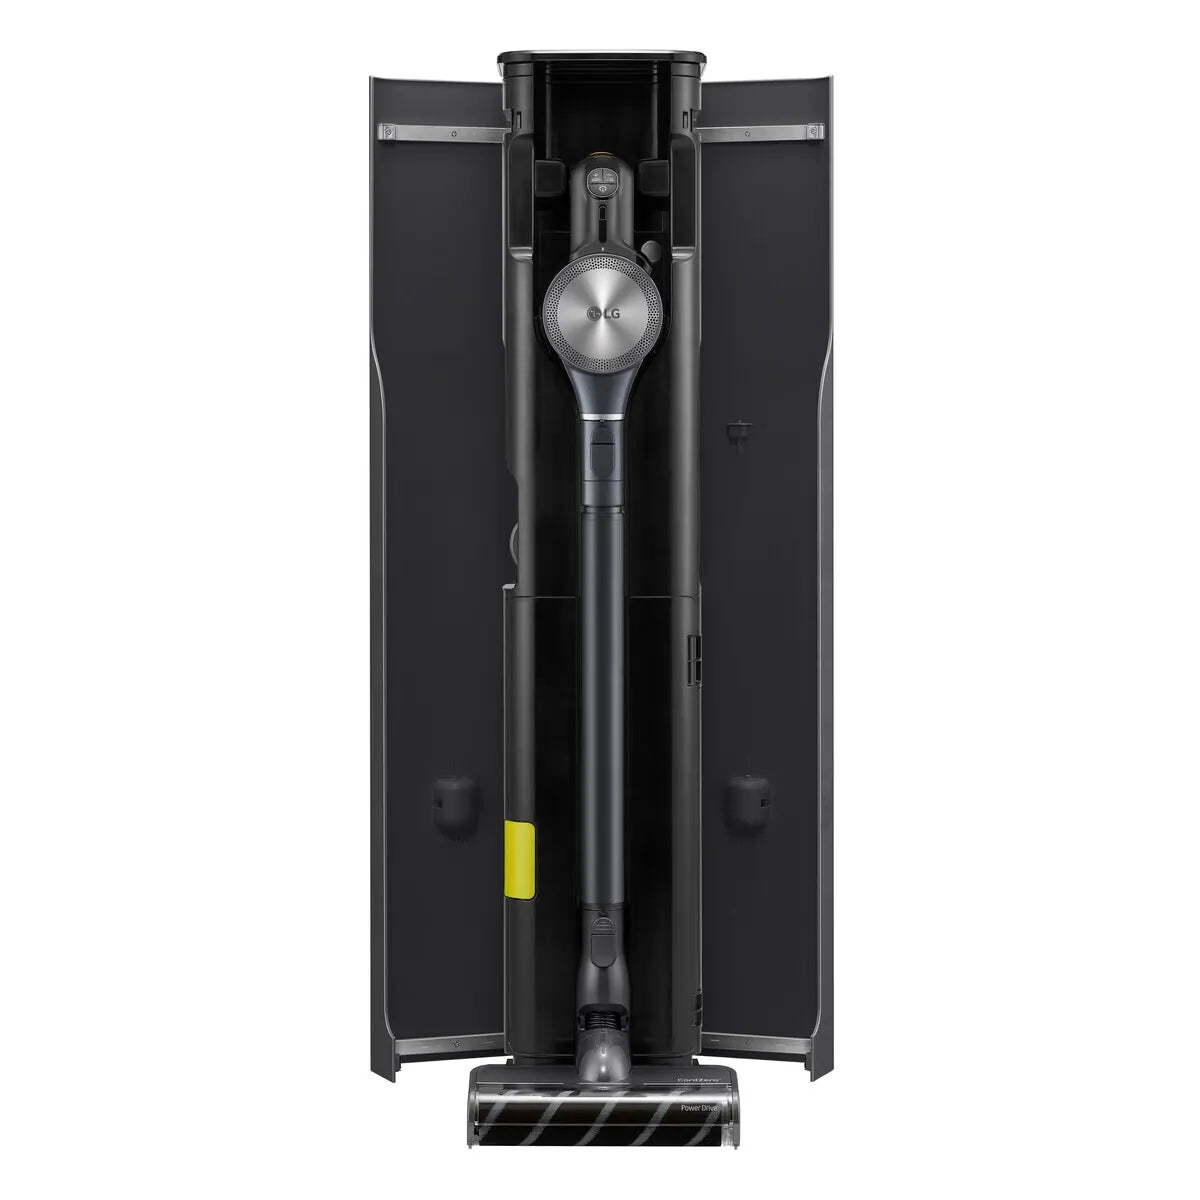 LG 樂金 CordZero™ A9 All - in - One Tower™ A9T - CORE 無線吸塵機 - Fever Electrics 電器熱網購平台